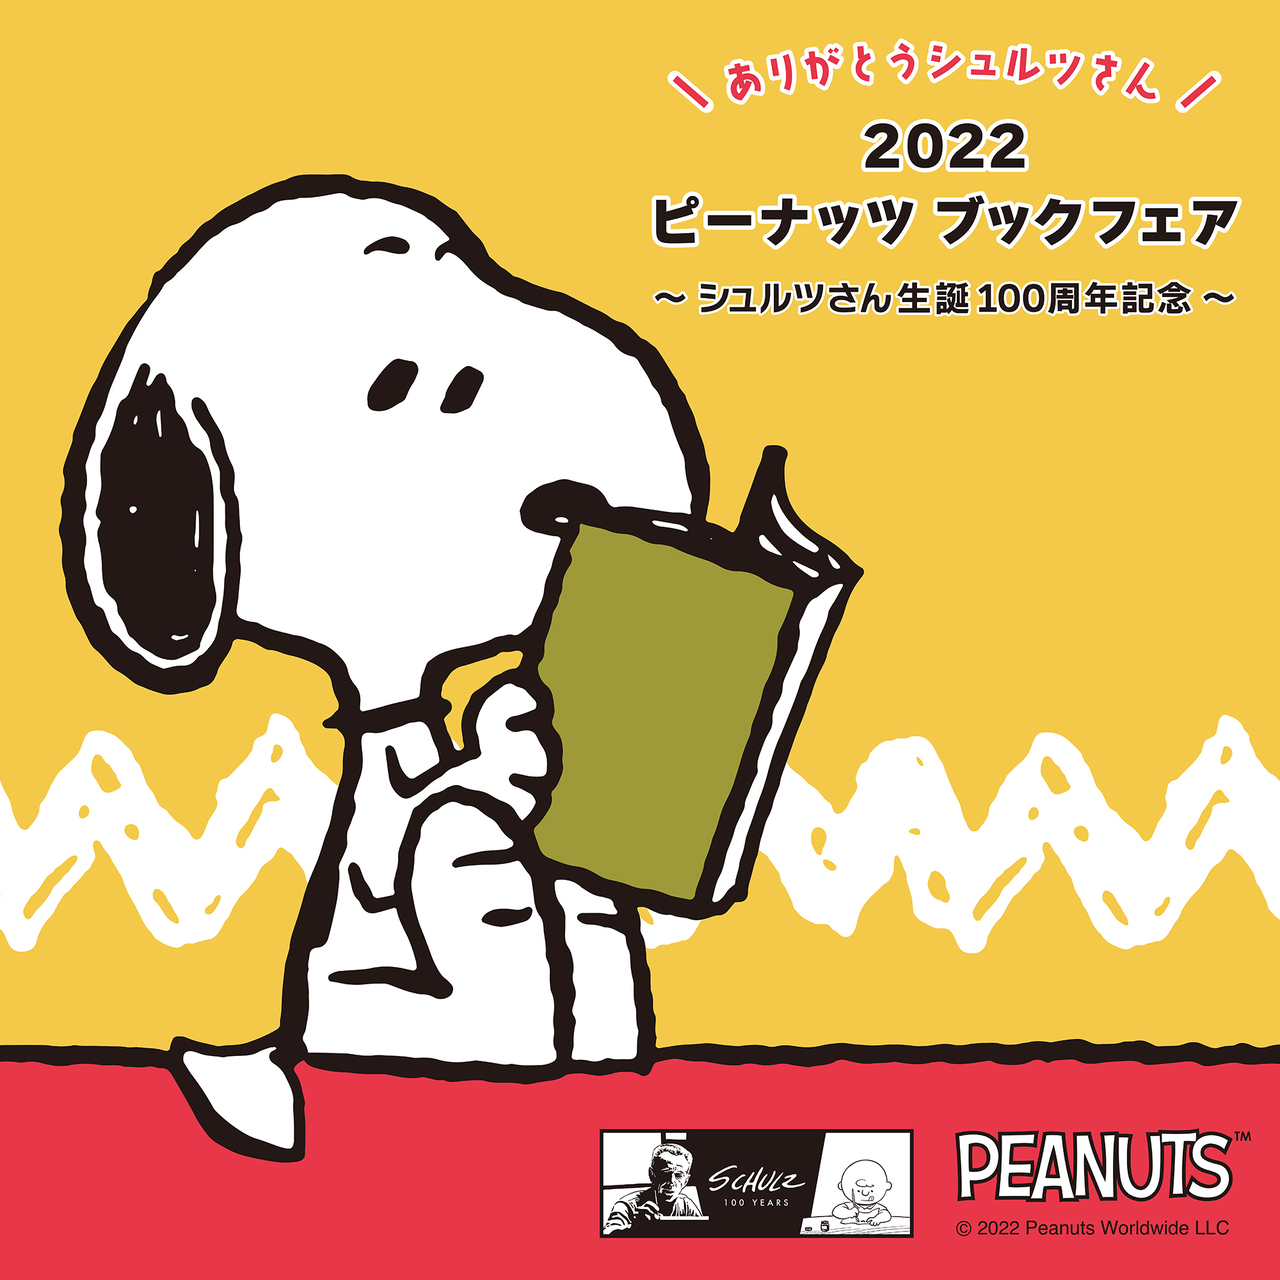 【読書の秋】全国の書店で開催！「ありがとうシュルツさん 2022 ピーナッツブックフェア」